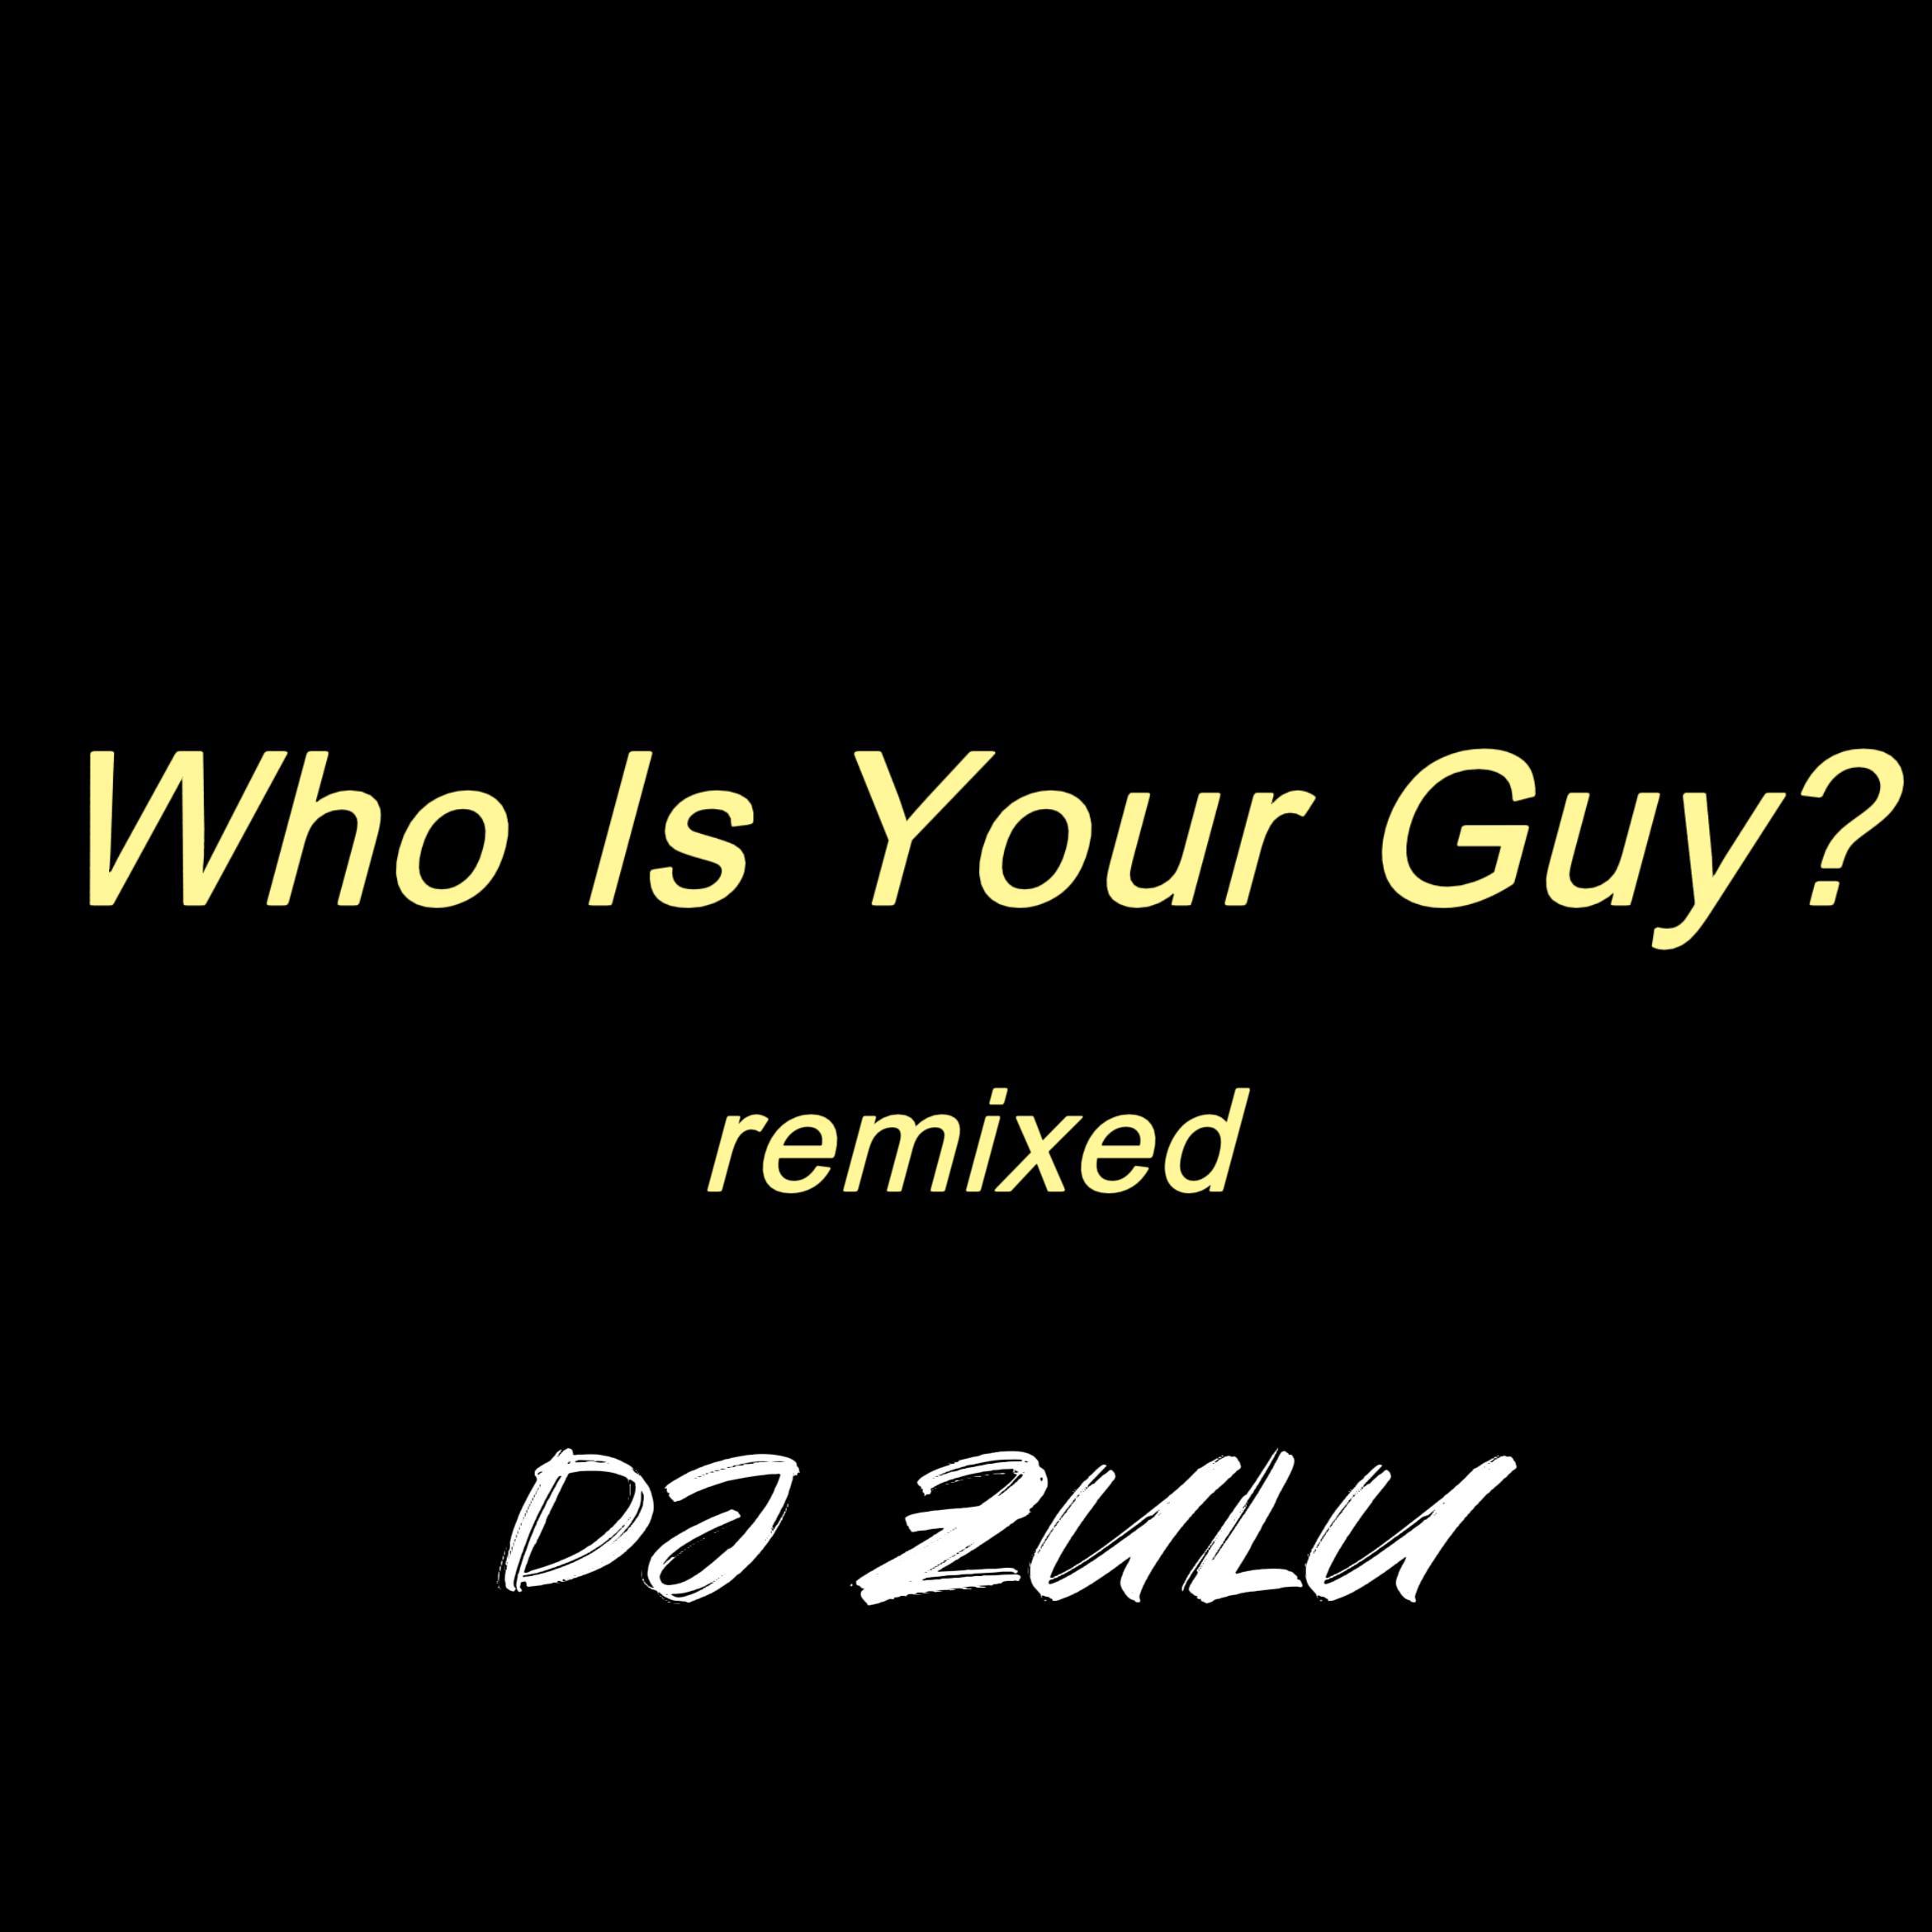 DJ Zulu - Who Is Your Guy? (remix) (feat. Spyro)